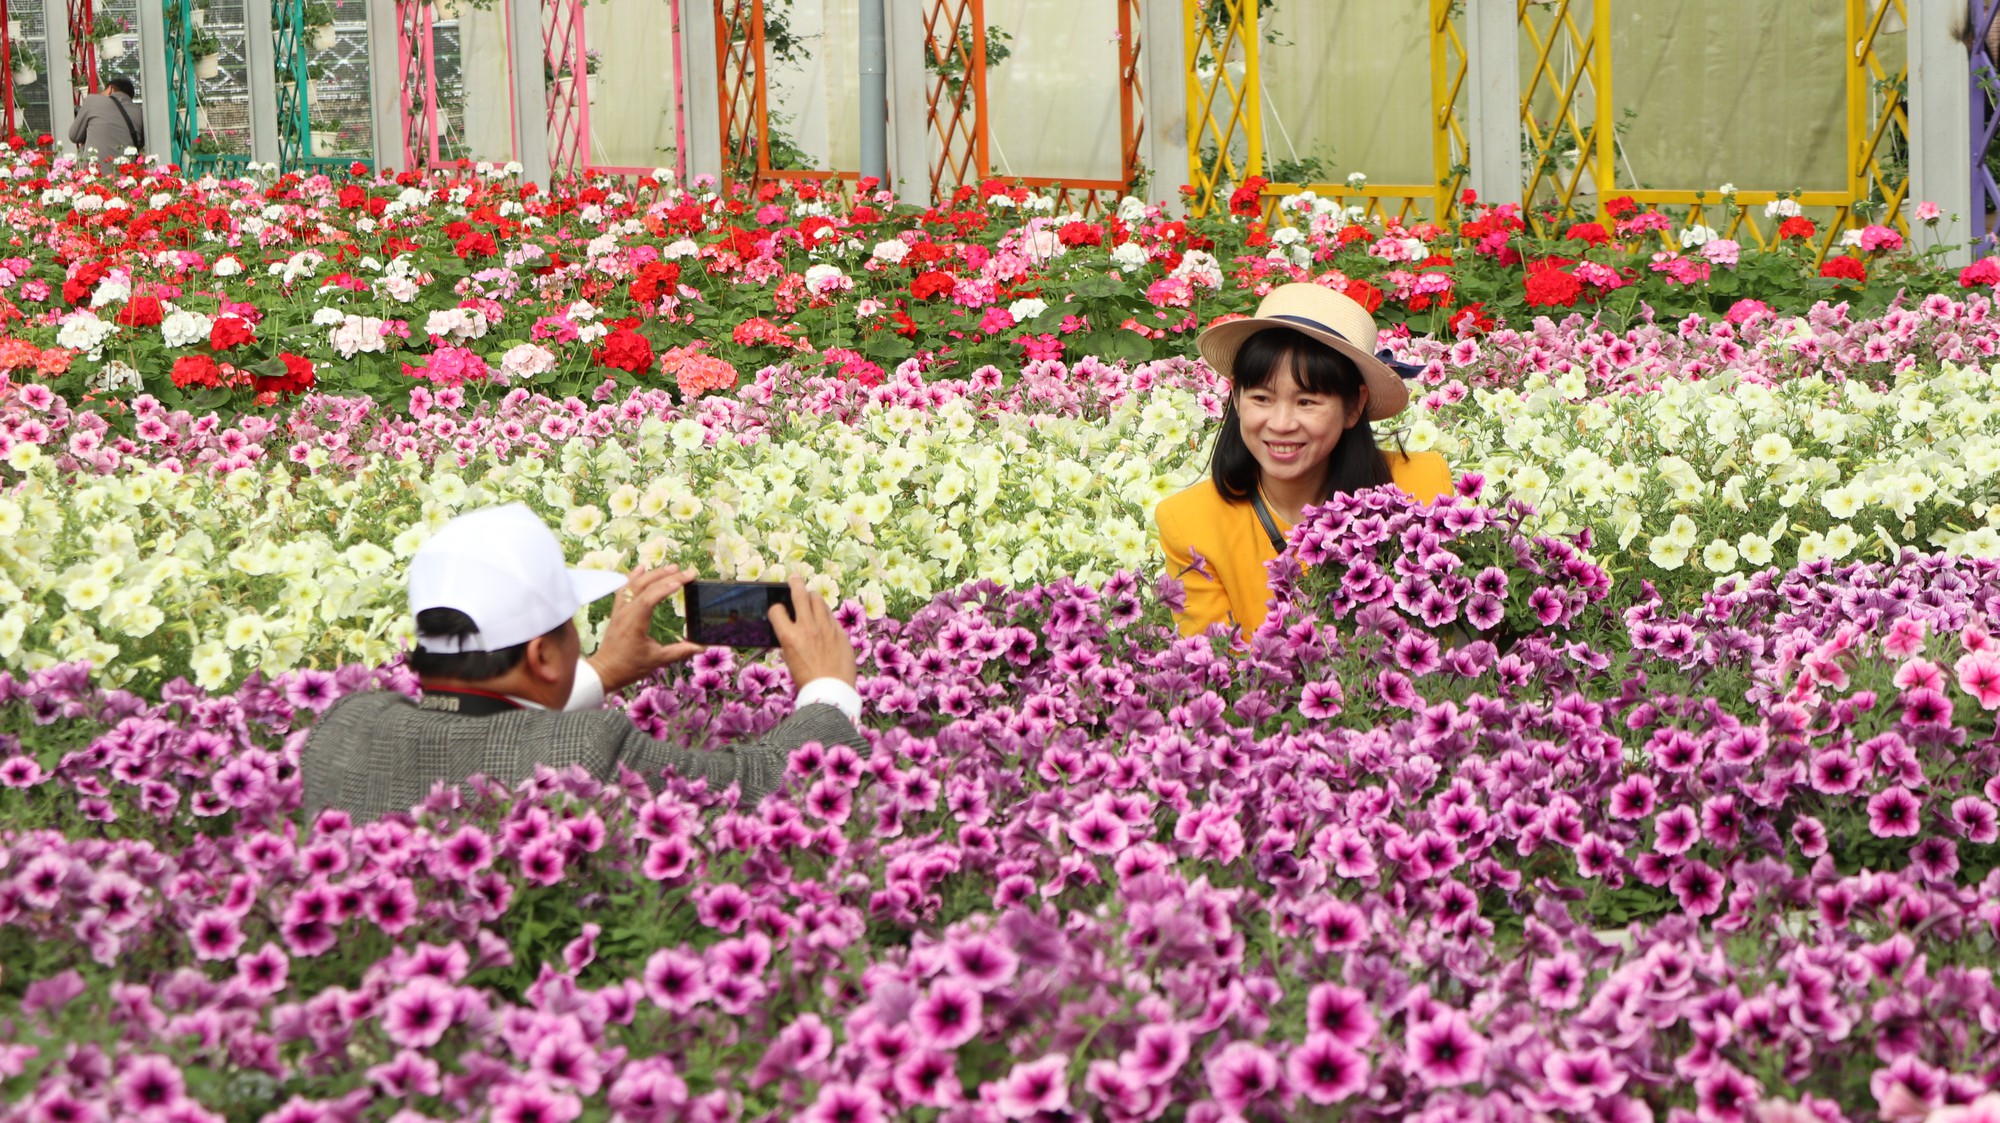 Hơn 370 tỷ đồng phát triển du lịch canh nông tại Lâm Đồng - Ảnh 3.